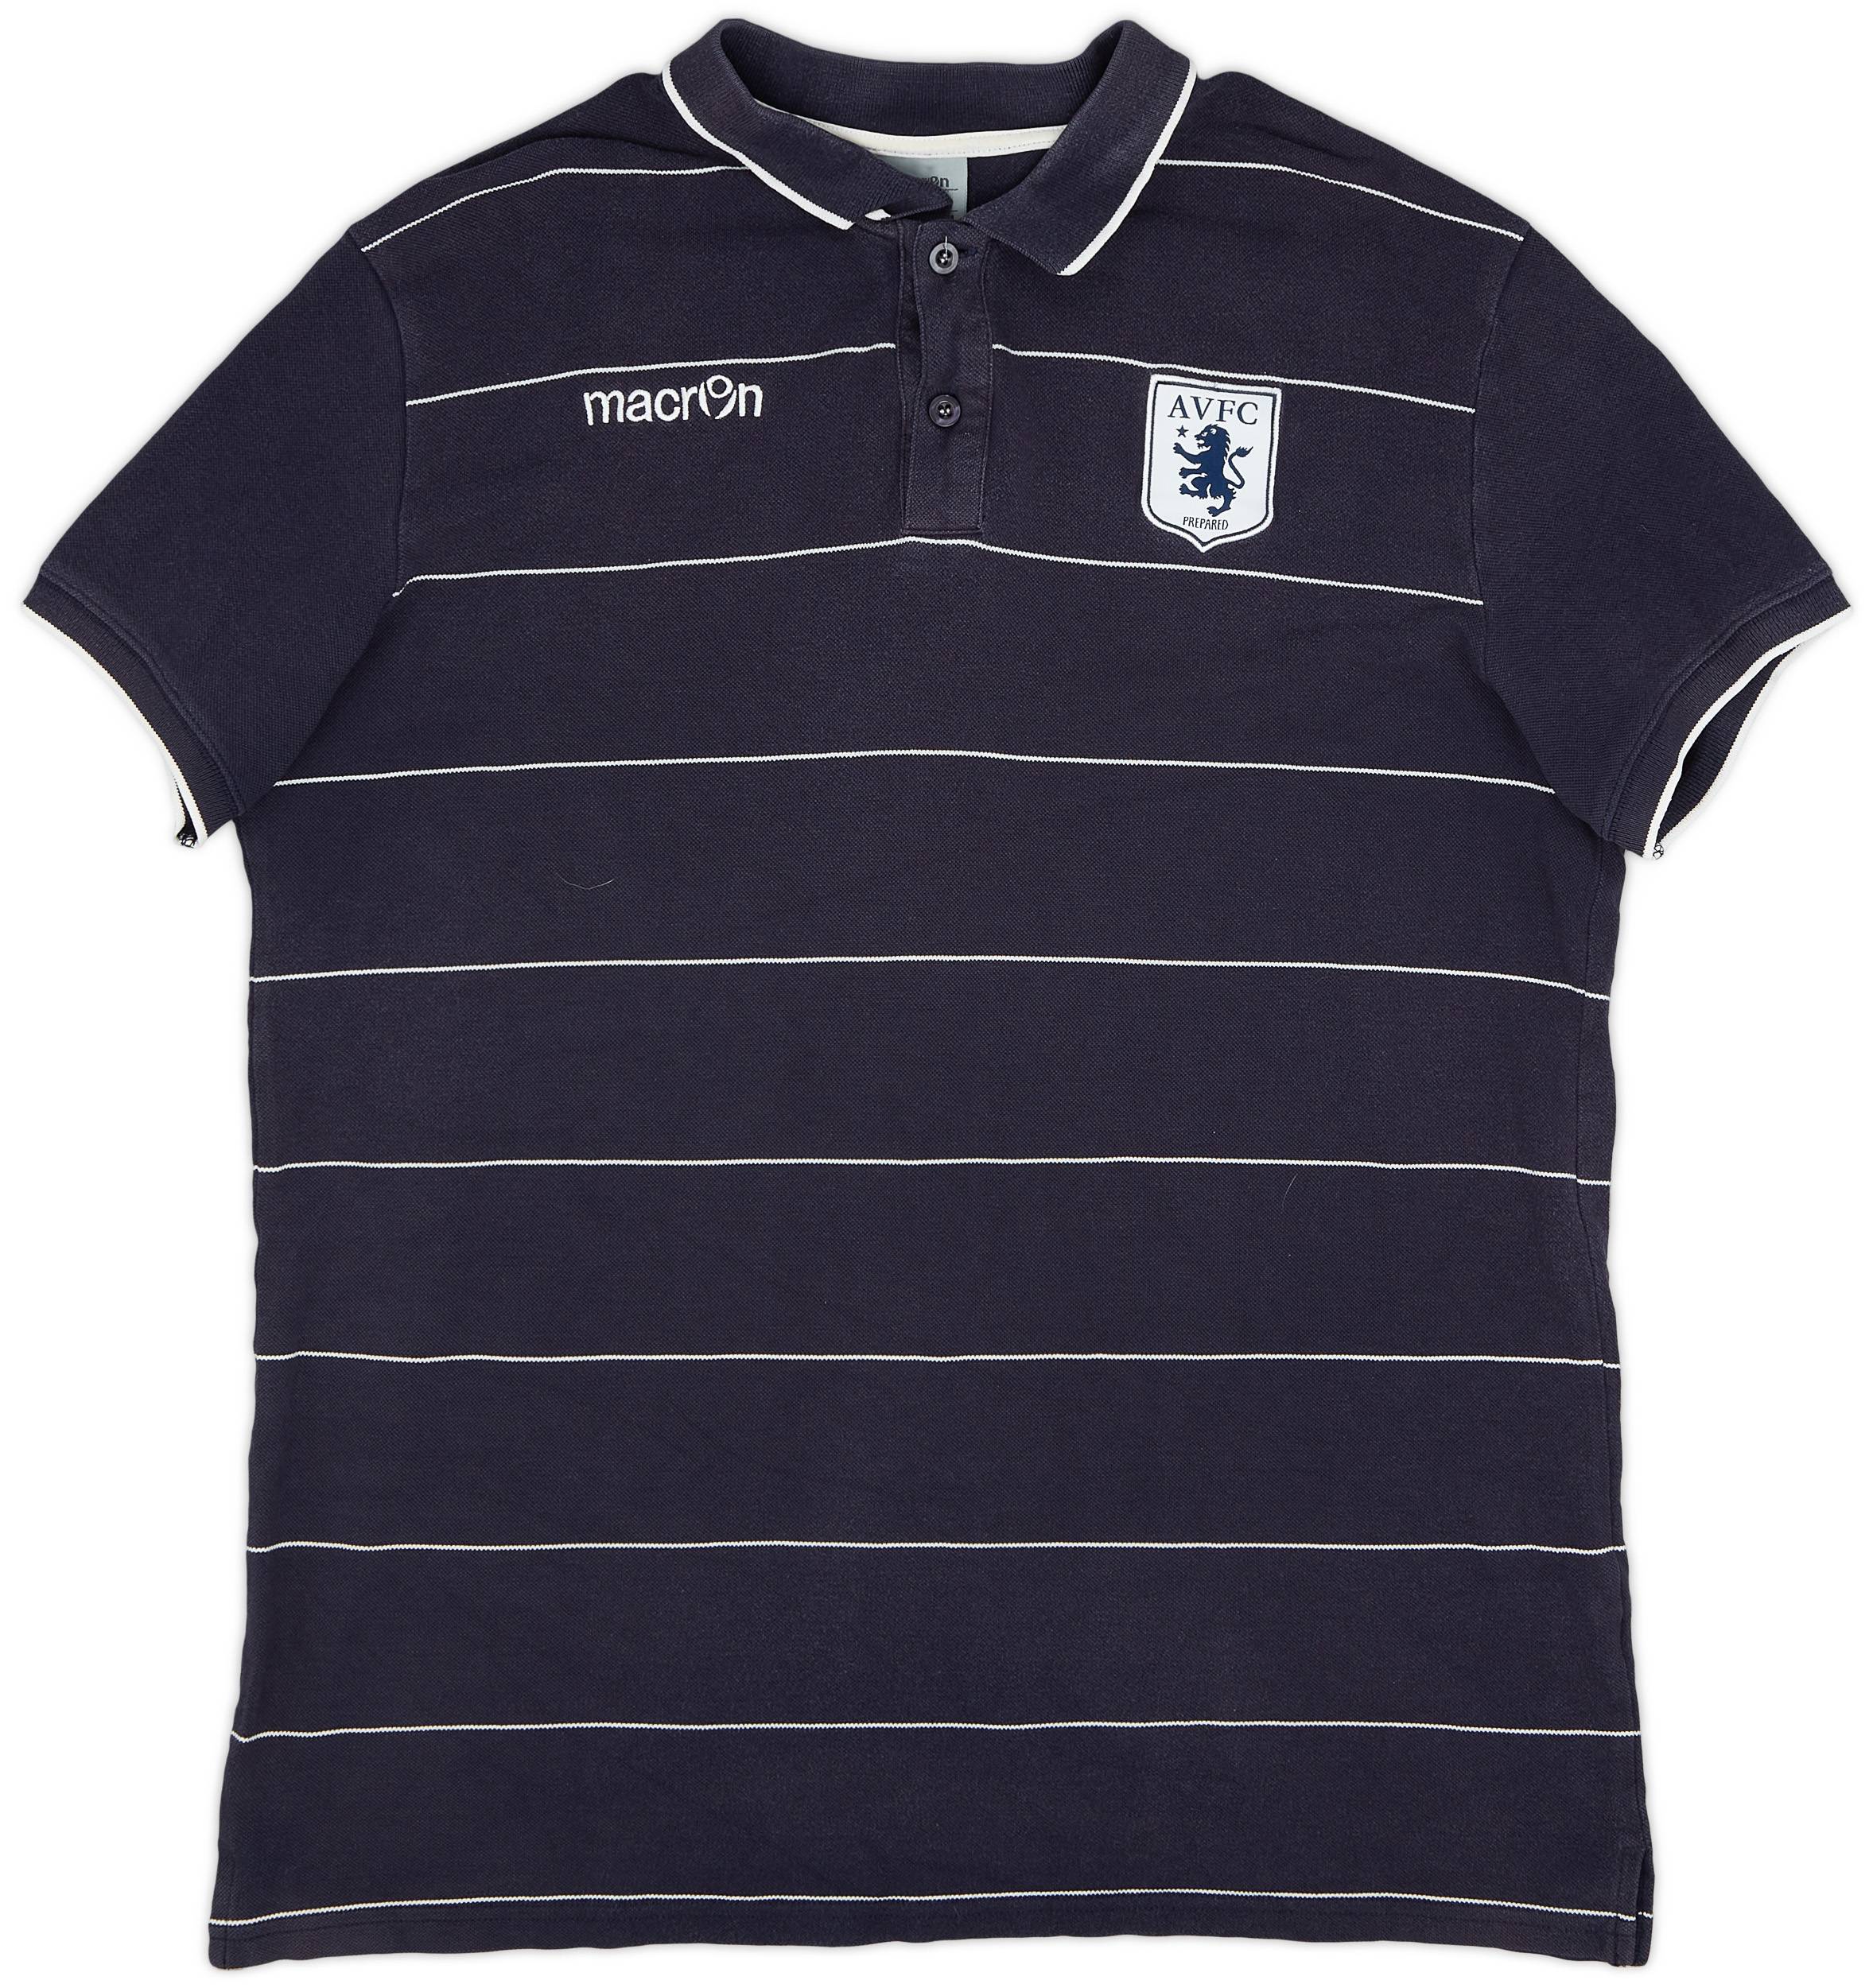 2014-15 Aston Villa Macron Polo Shirt - 8/10 - (3XL)